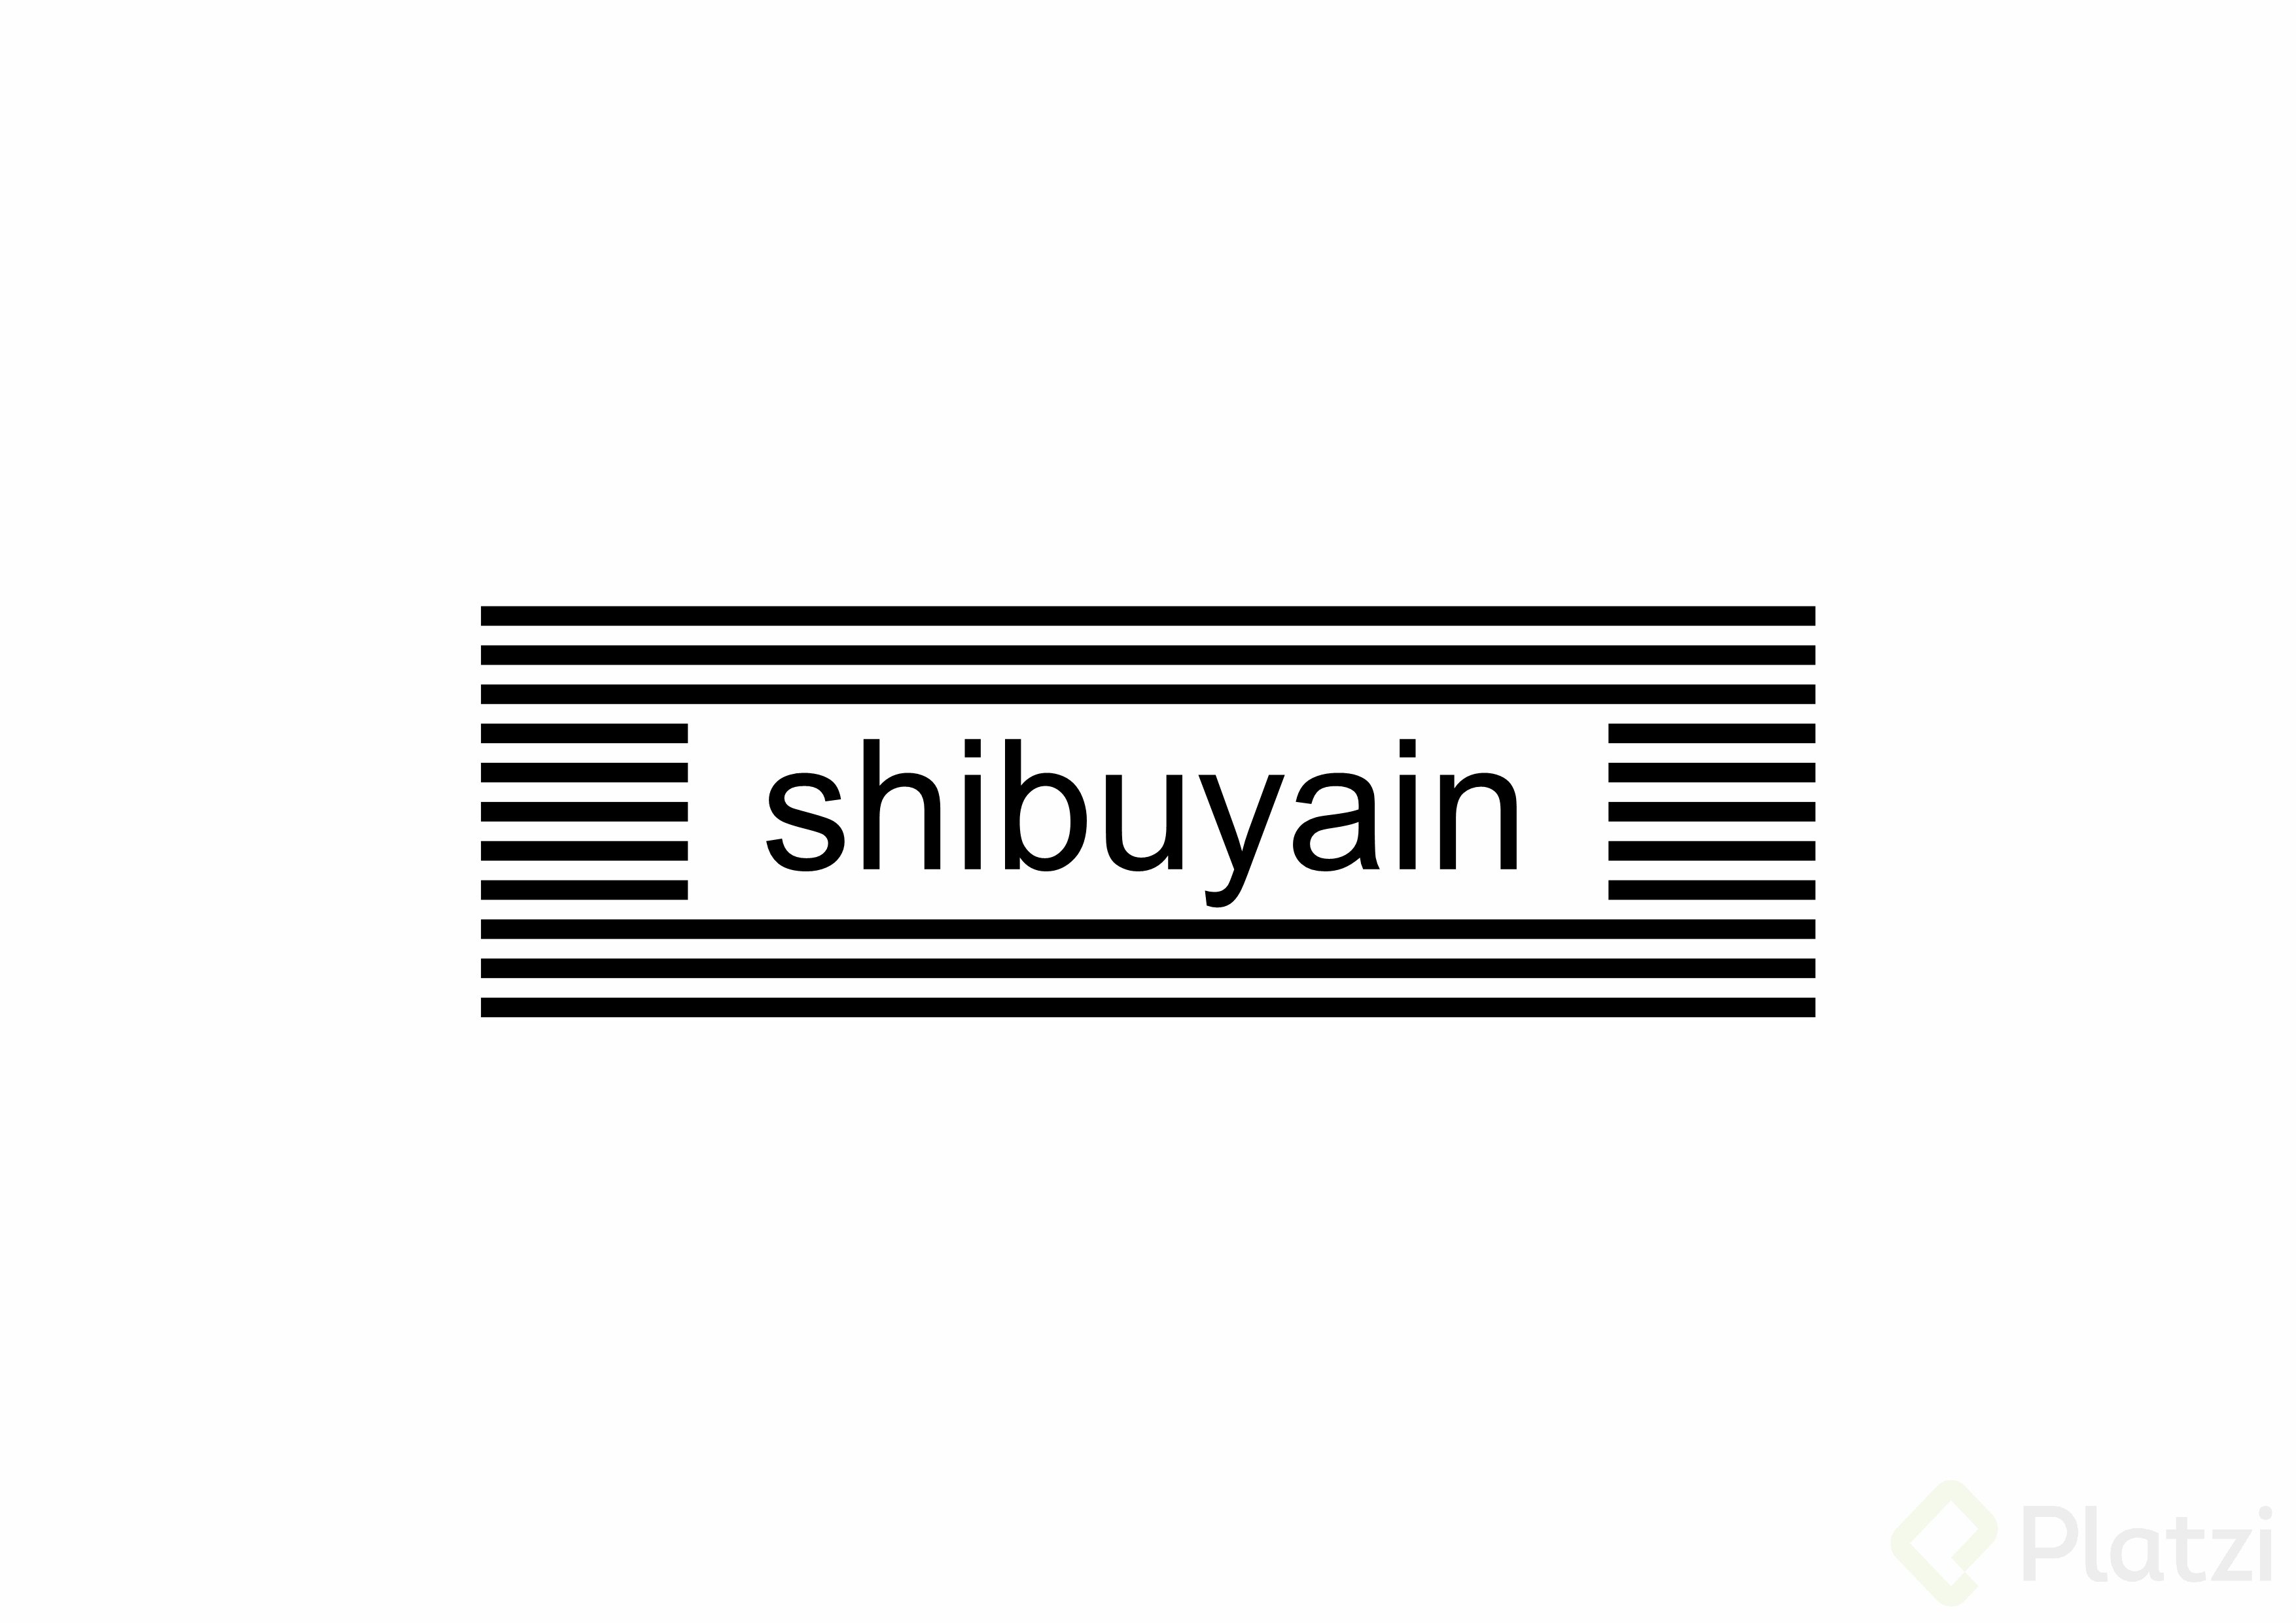 shibuyain boceto 3.jpg